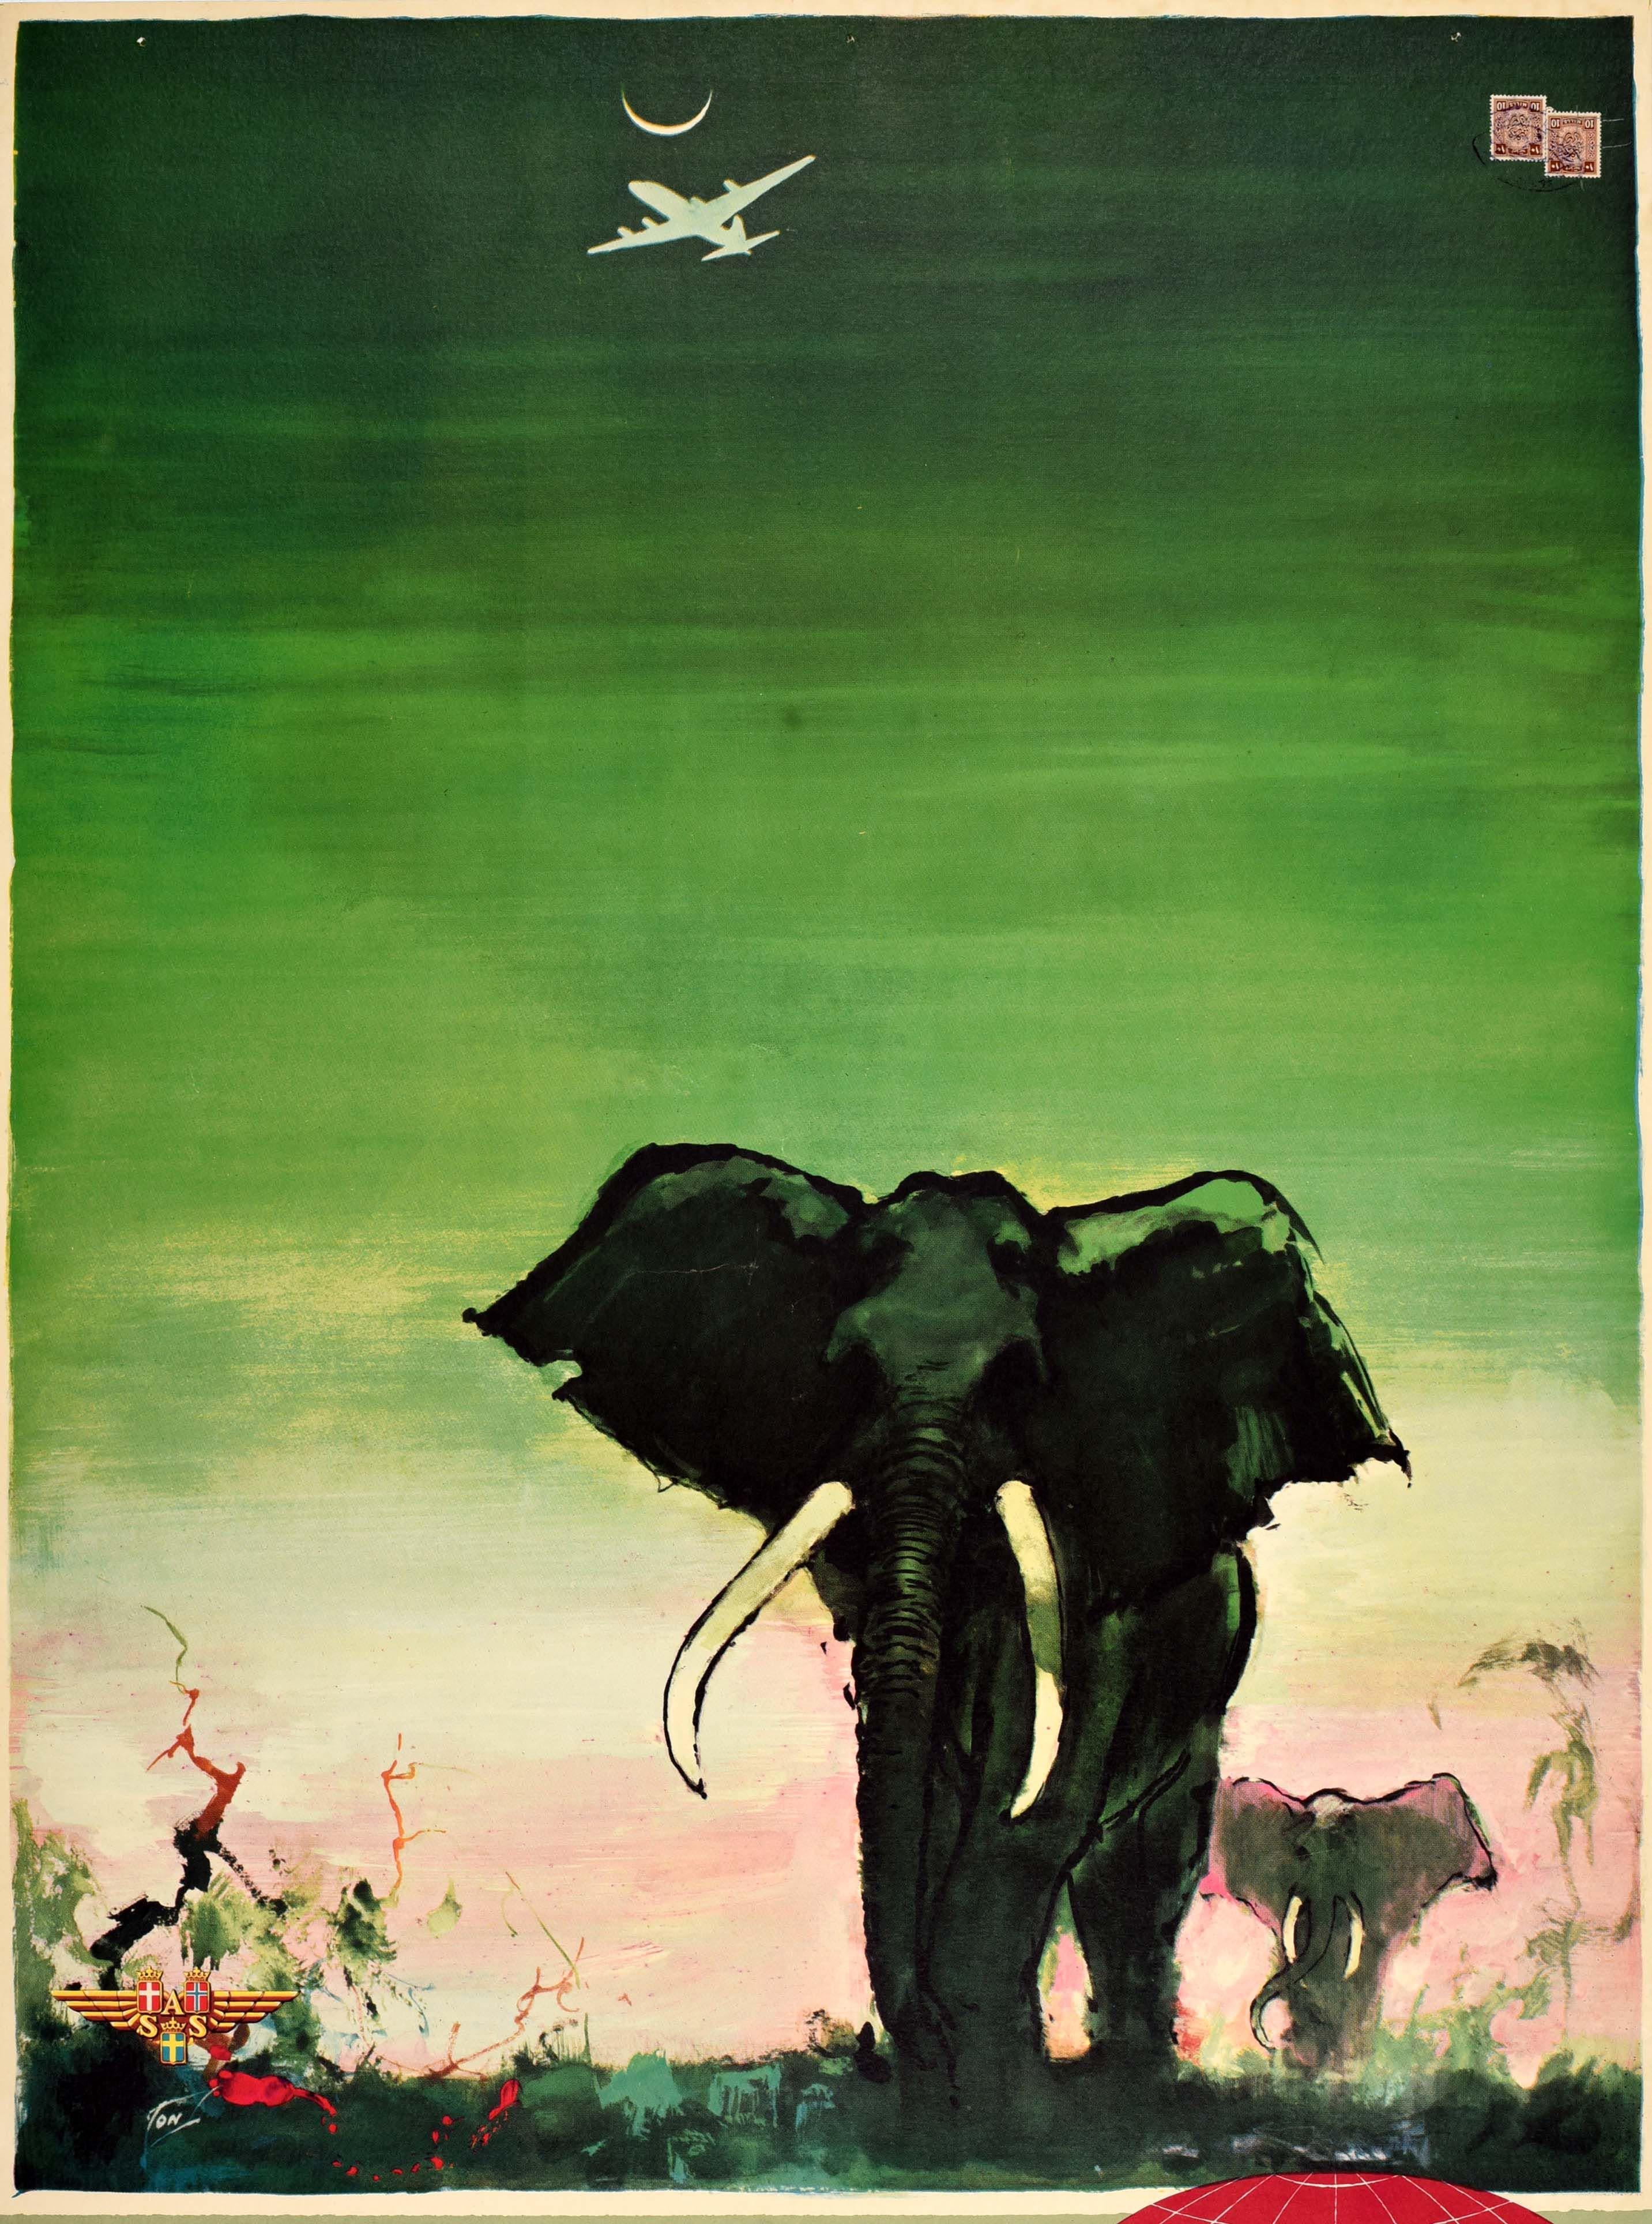 Original Vintage-Reiseplakat - Afrika von SAS Scandinavian Airlines System - mit atemberaubenden Kunstwerken des bedeutenden dänischen Künstlers Otto Nielsen (1916-2000) von Elefanten, die in der Savanne auf den Betrachter zugehen, mit einem